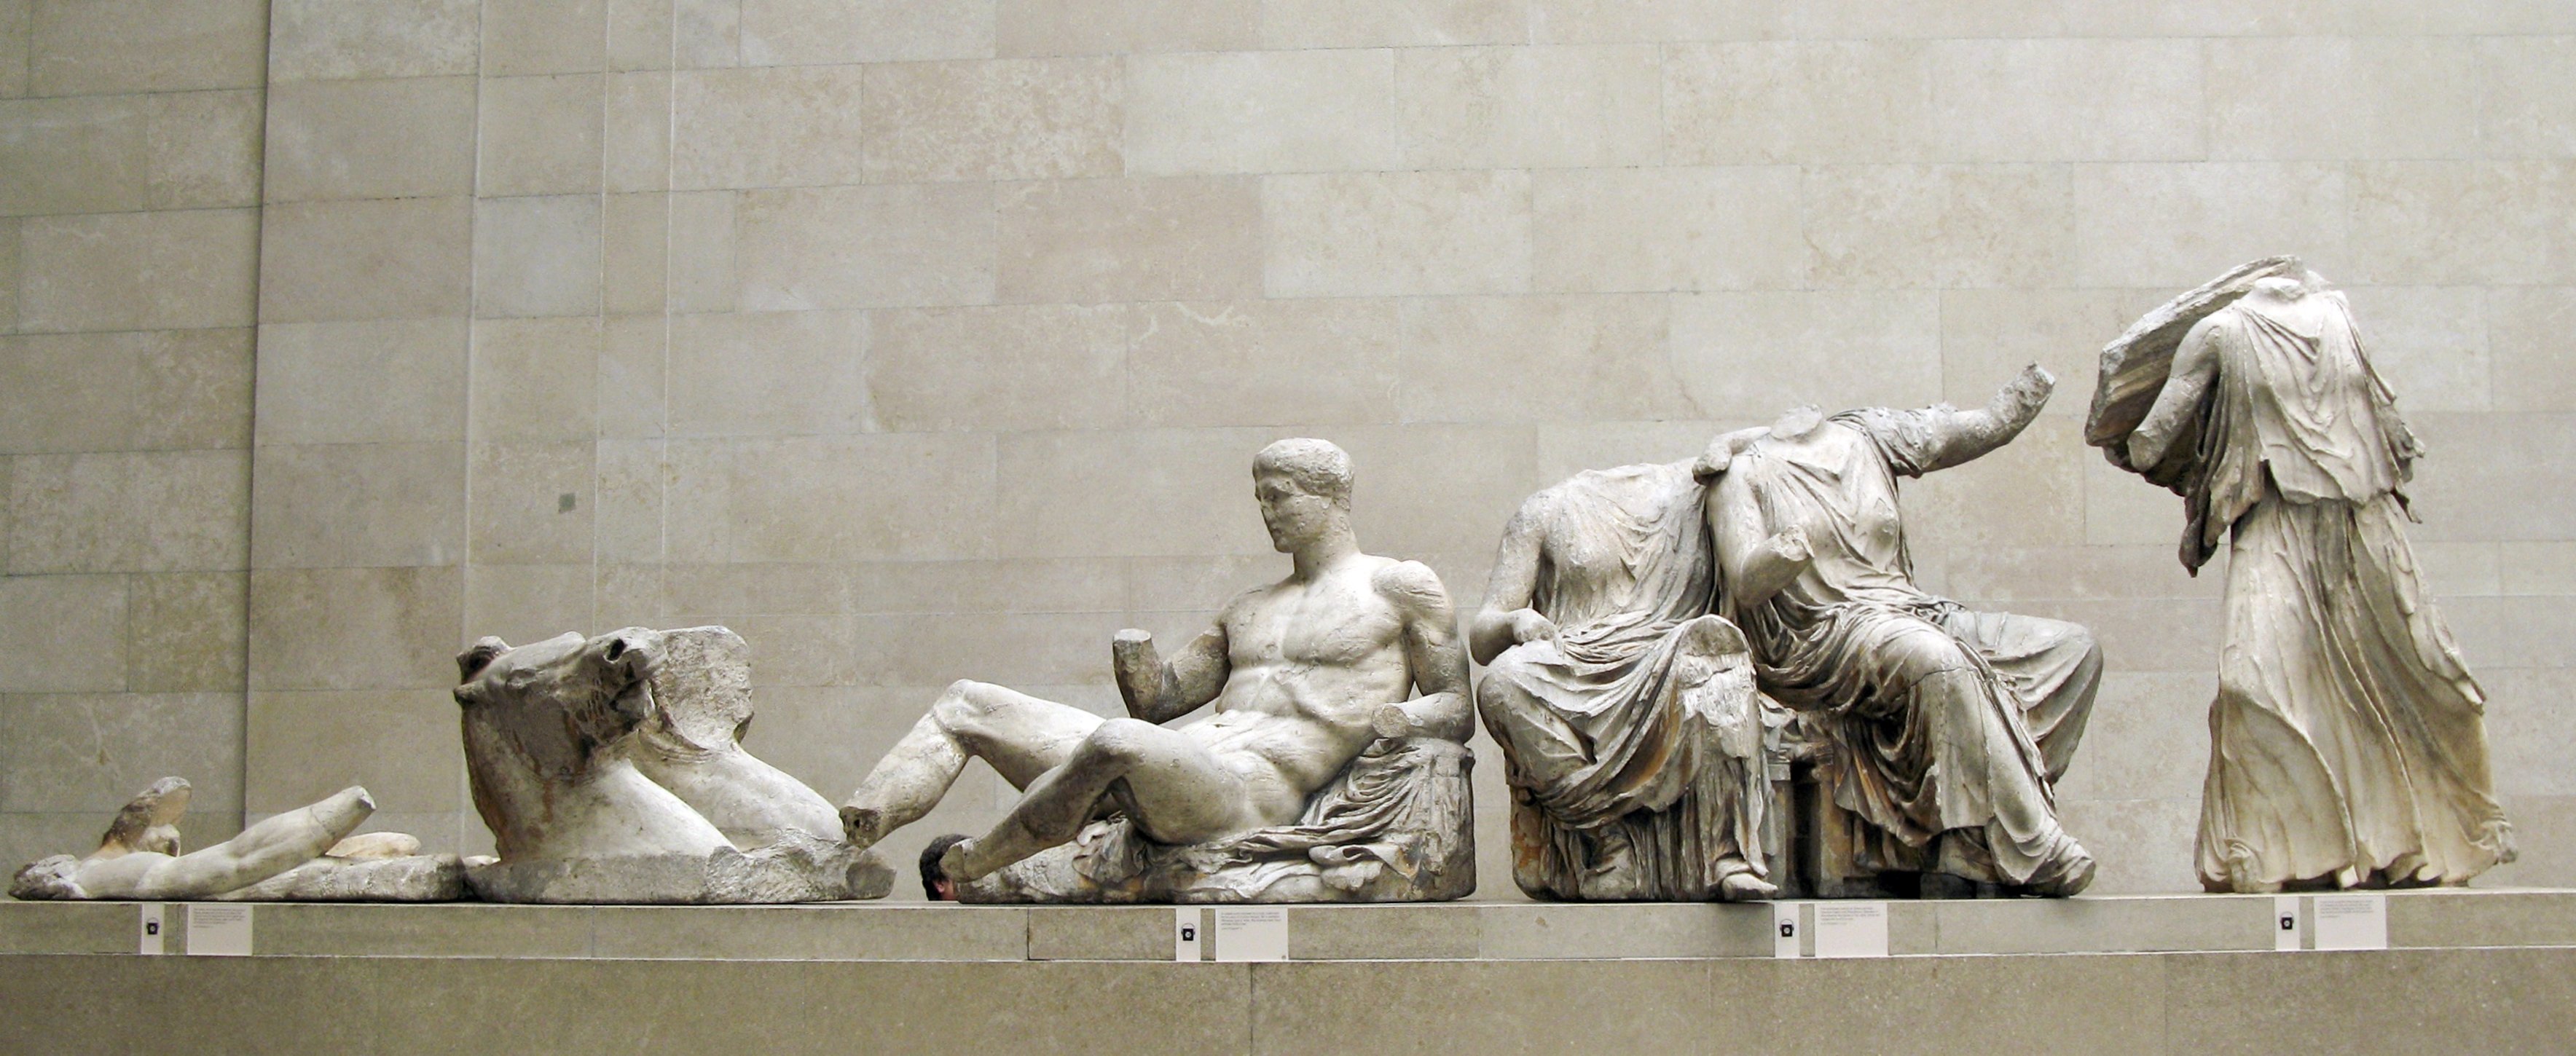 Efecte art de la Franja, a la inversa: Londres no tornarà marbres del Partenó